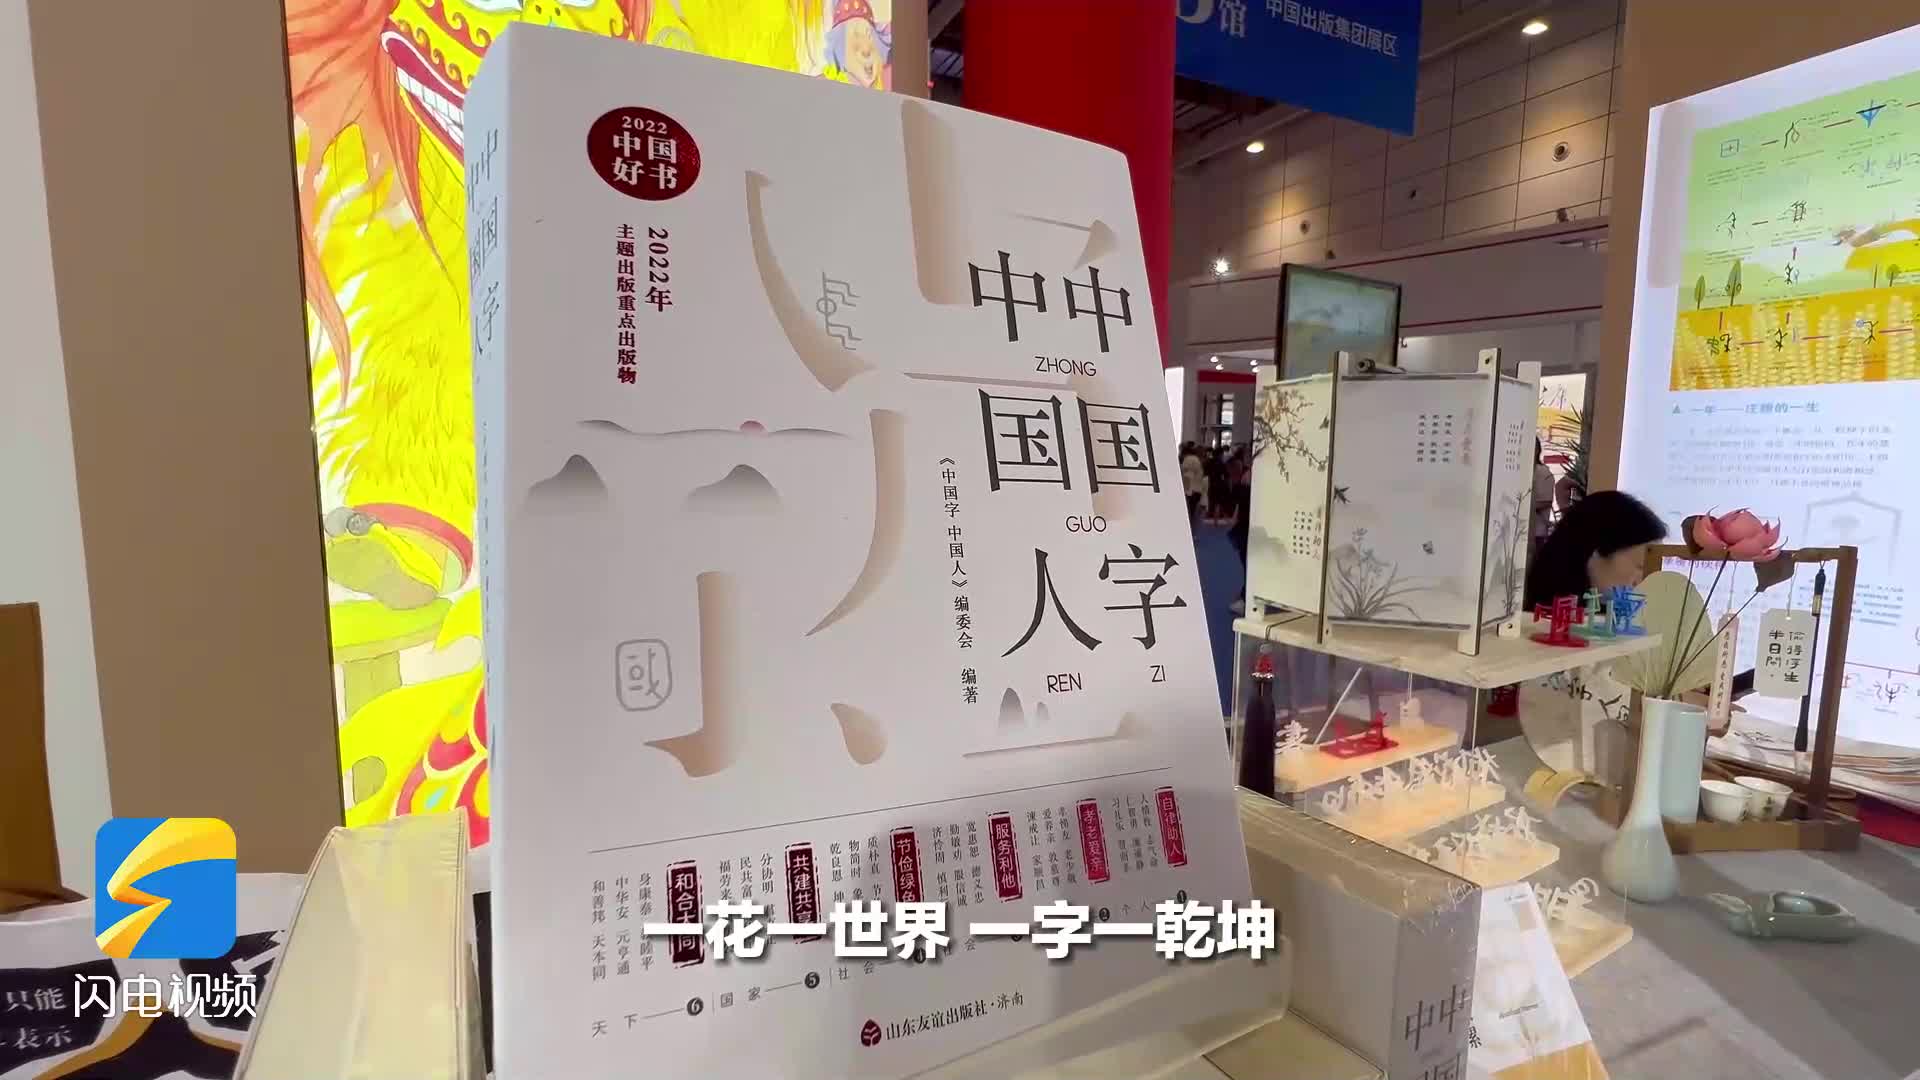 Vlog｜好看！好学！好玩！闪电新闻记者带你逛书博会 领略汉字背后的中国故事